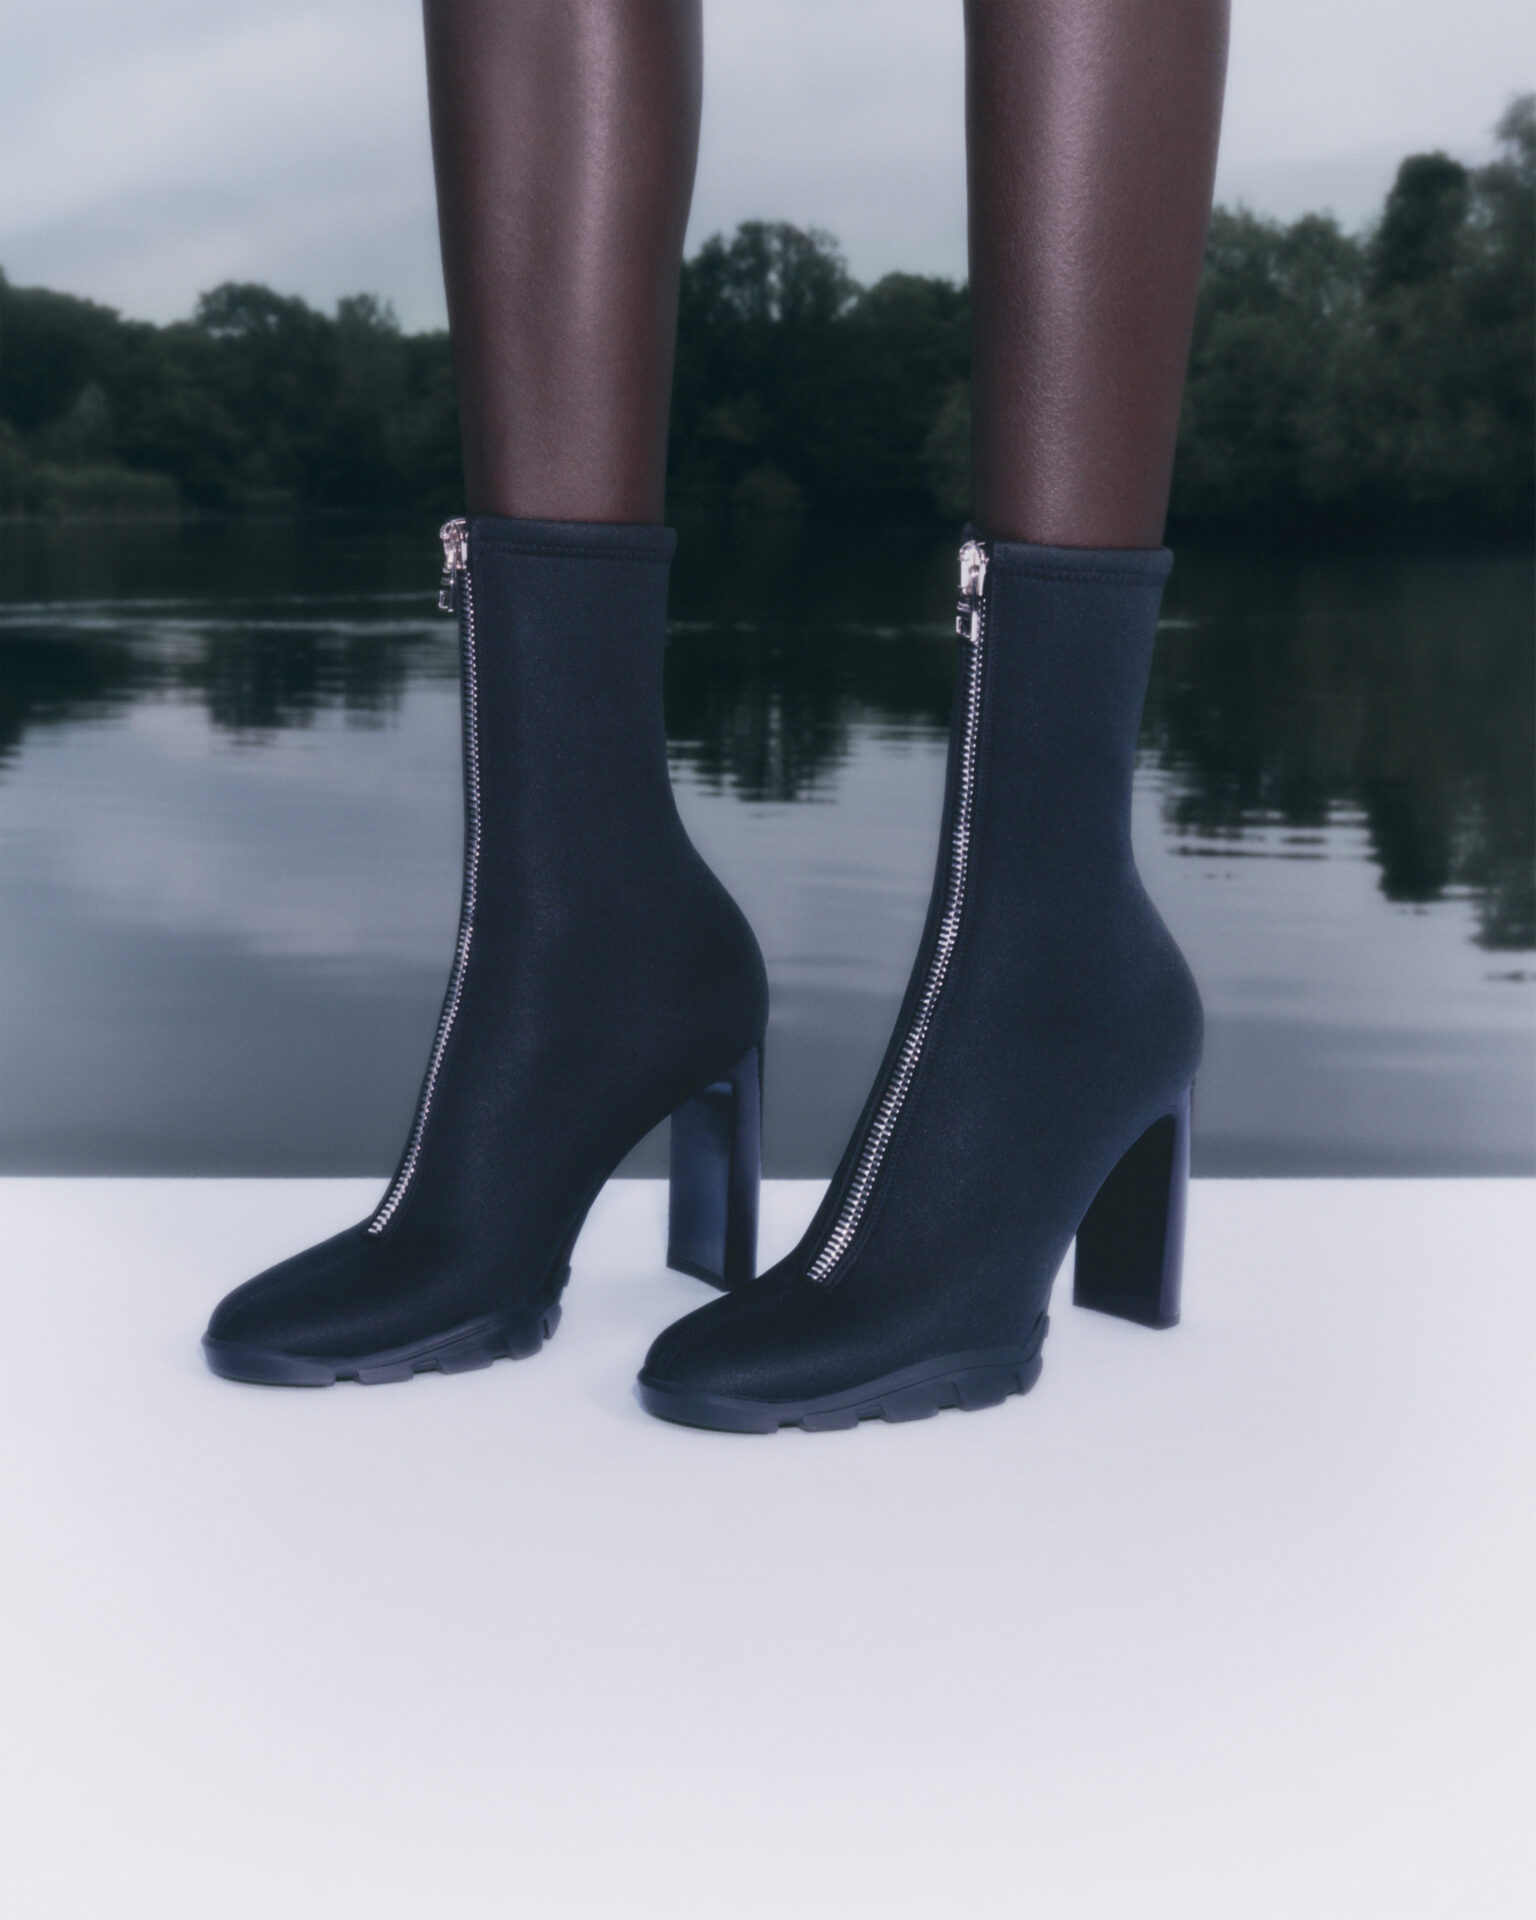 英国の高級ファッションブランドAlexander McQueen2022年春夏プレコレクションより新作ブーツが登場